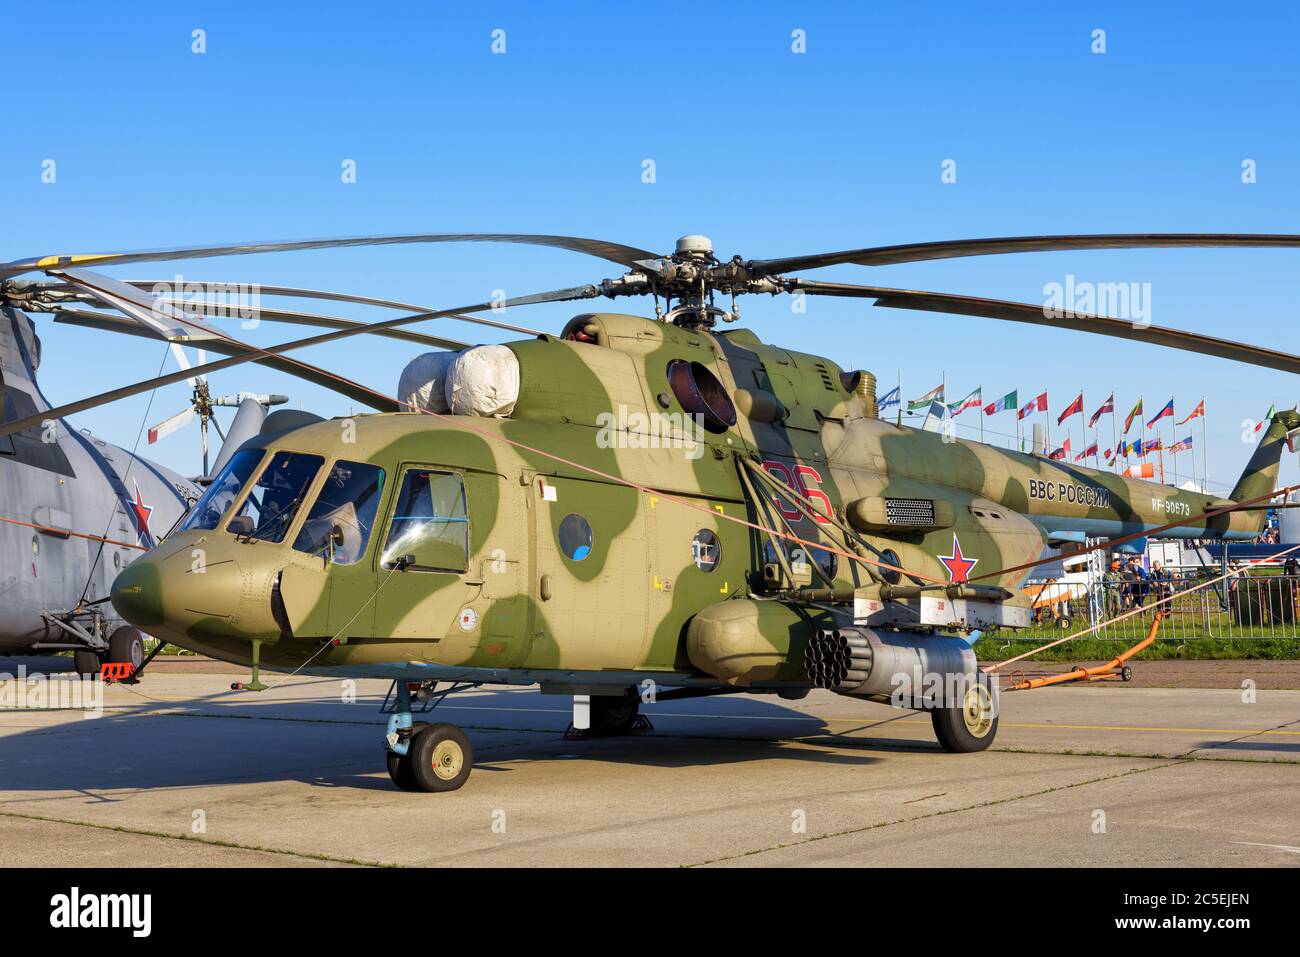 Regione di Mosca - 21 luglio 2017: Elicottero militare russo MIL mi-171Sh al Salone Internazionale dell'Aviazione e dello spazio (MAKS) a Zhukovsky. Foto Stock